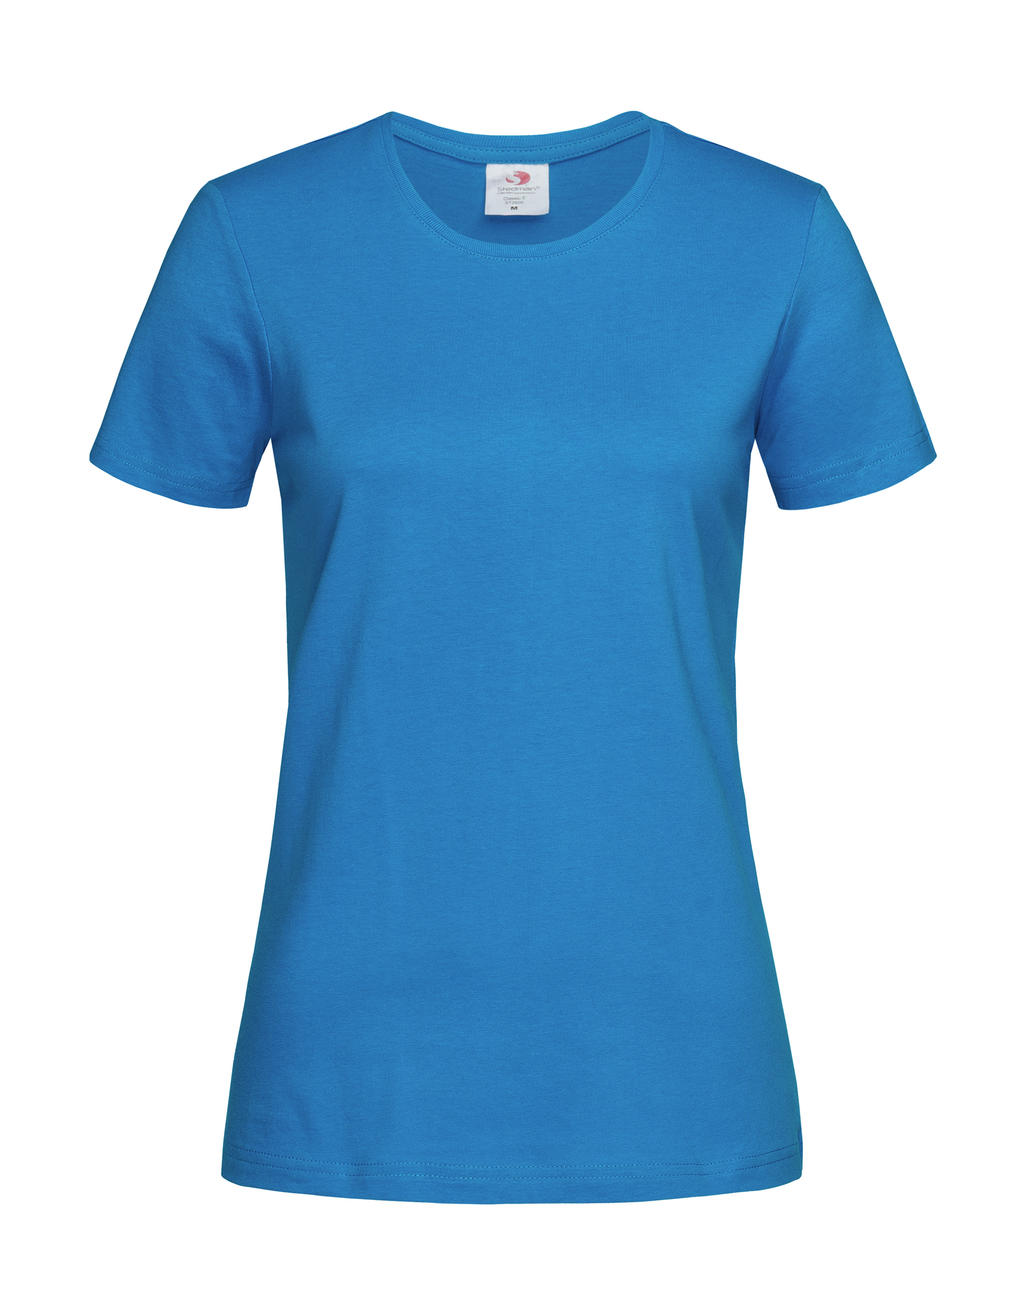 Tričko dámské Stedman Fitted s kulatým výstřihem - ocean blue, M